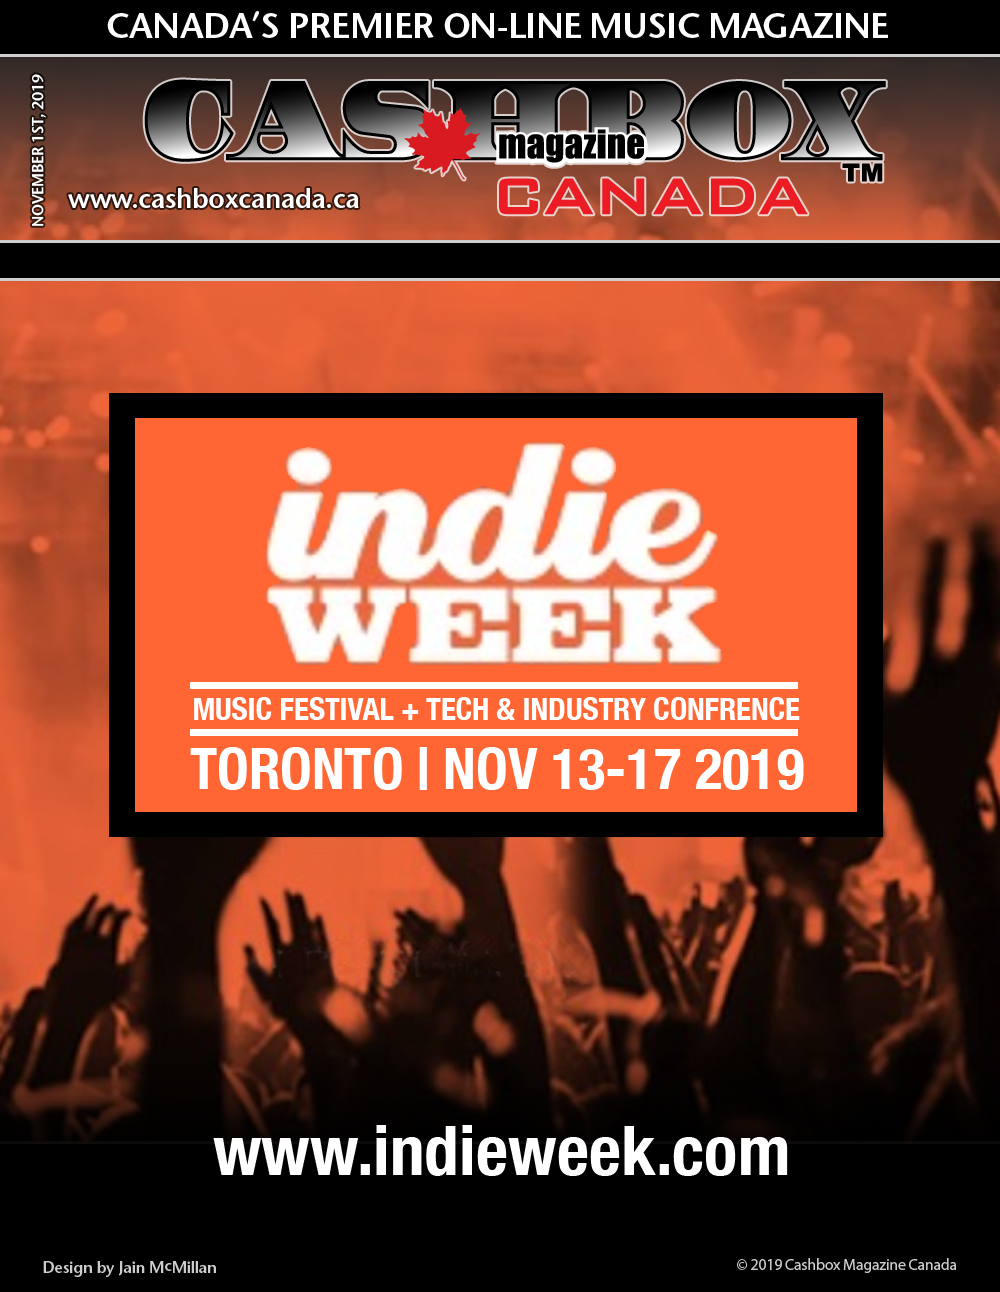 Indie Week Toronto November 13-17, 2019